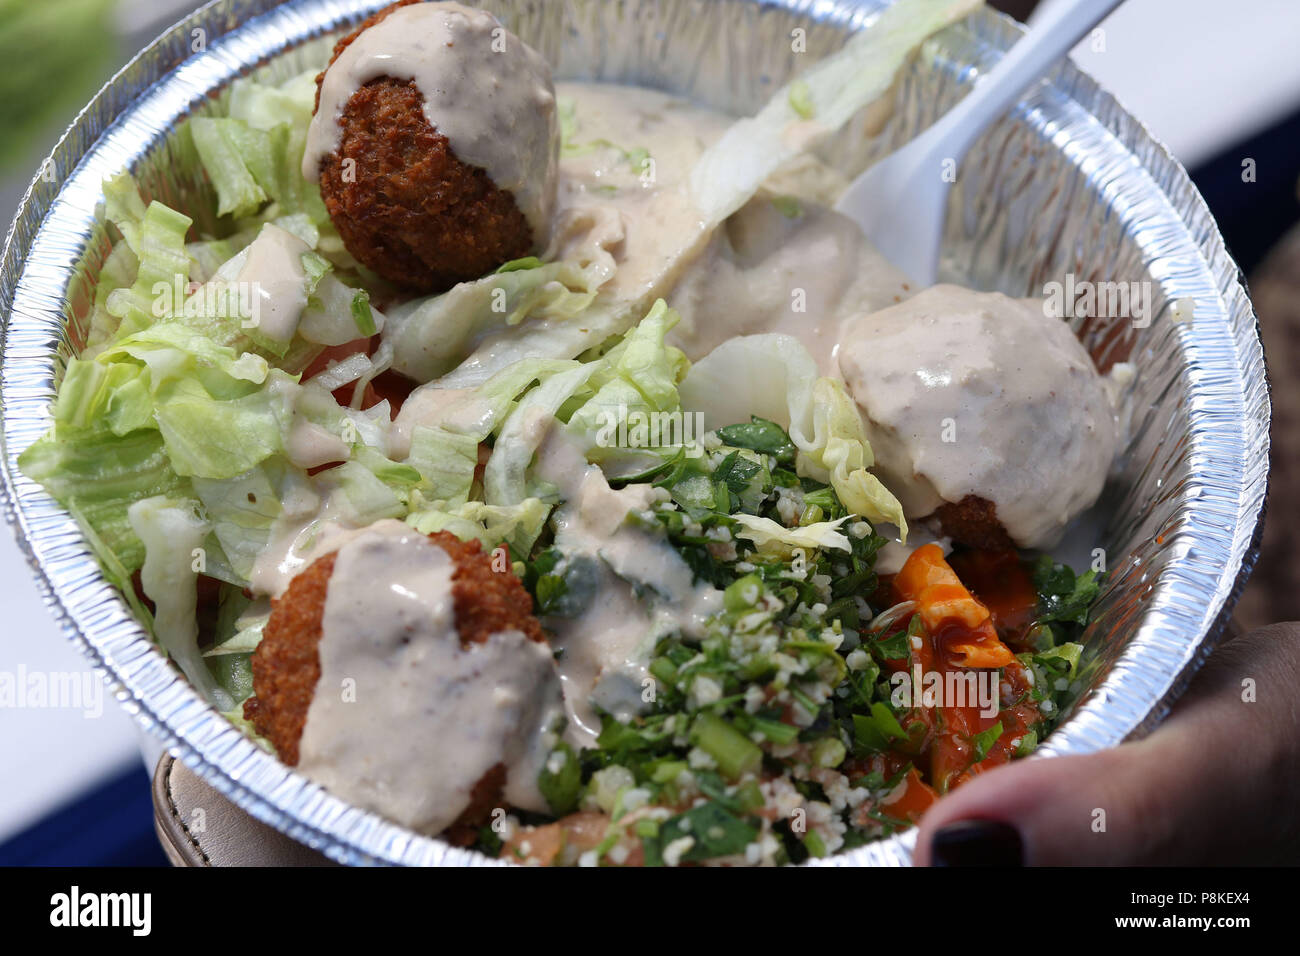 Falafel plat avec de l'hoummos, tabbouli et légumes Banque D'Images